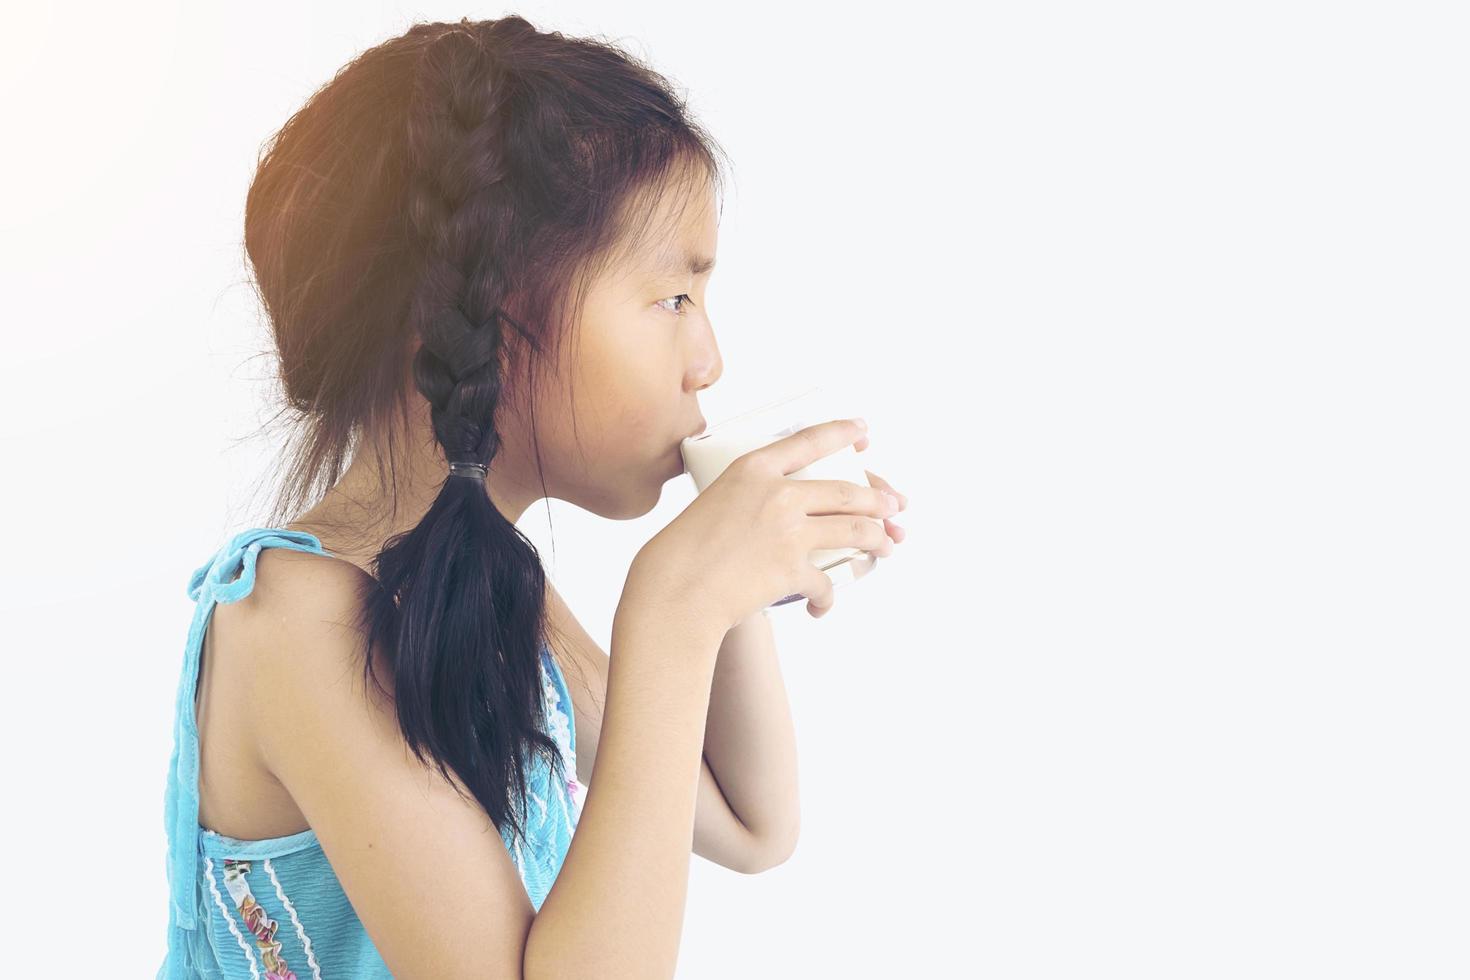 asiatisk flicka dricker ett glas mjölk över vit bakgrund foto